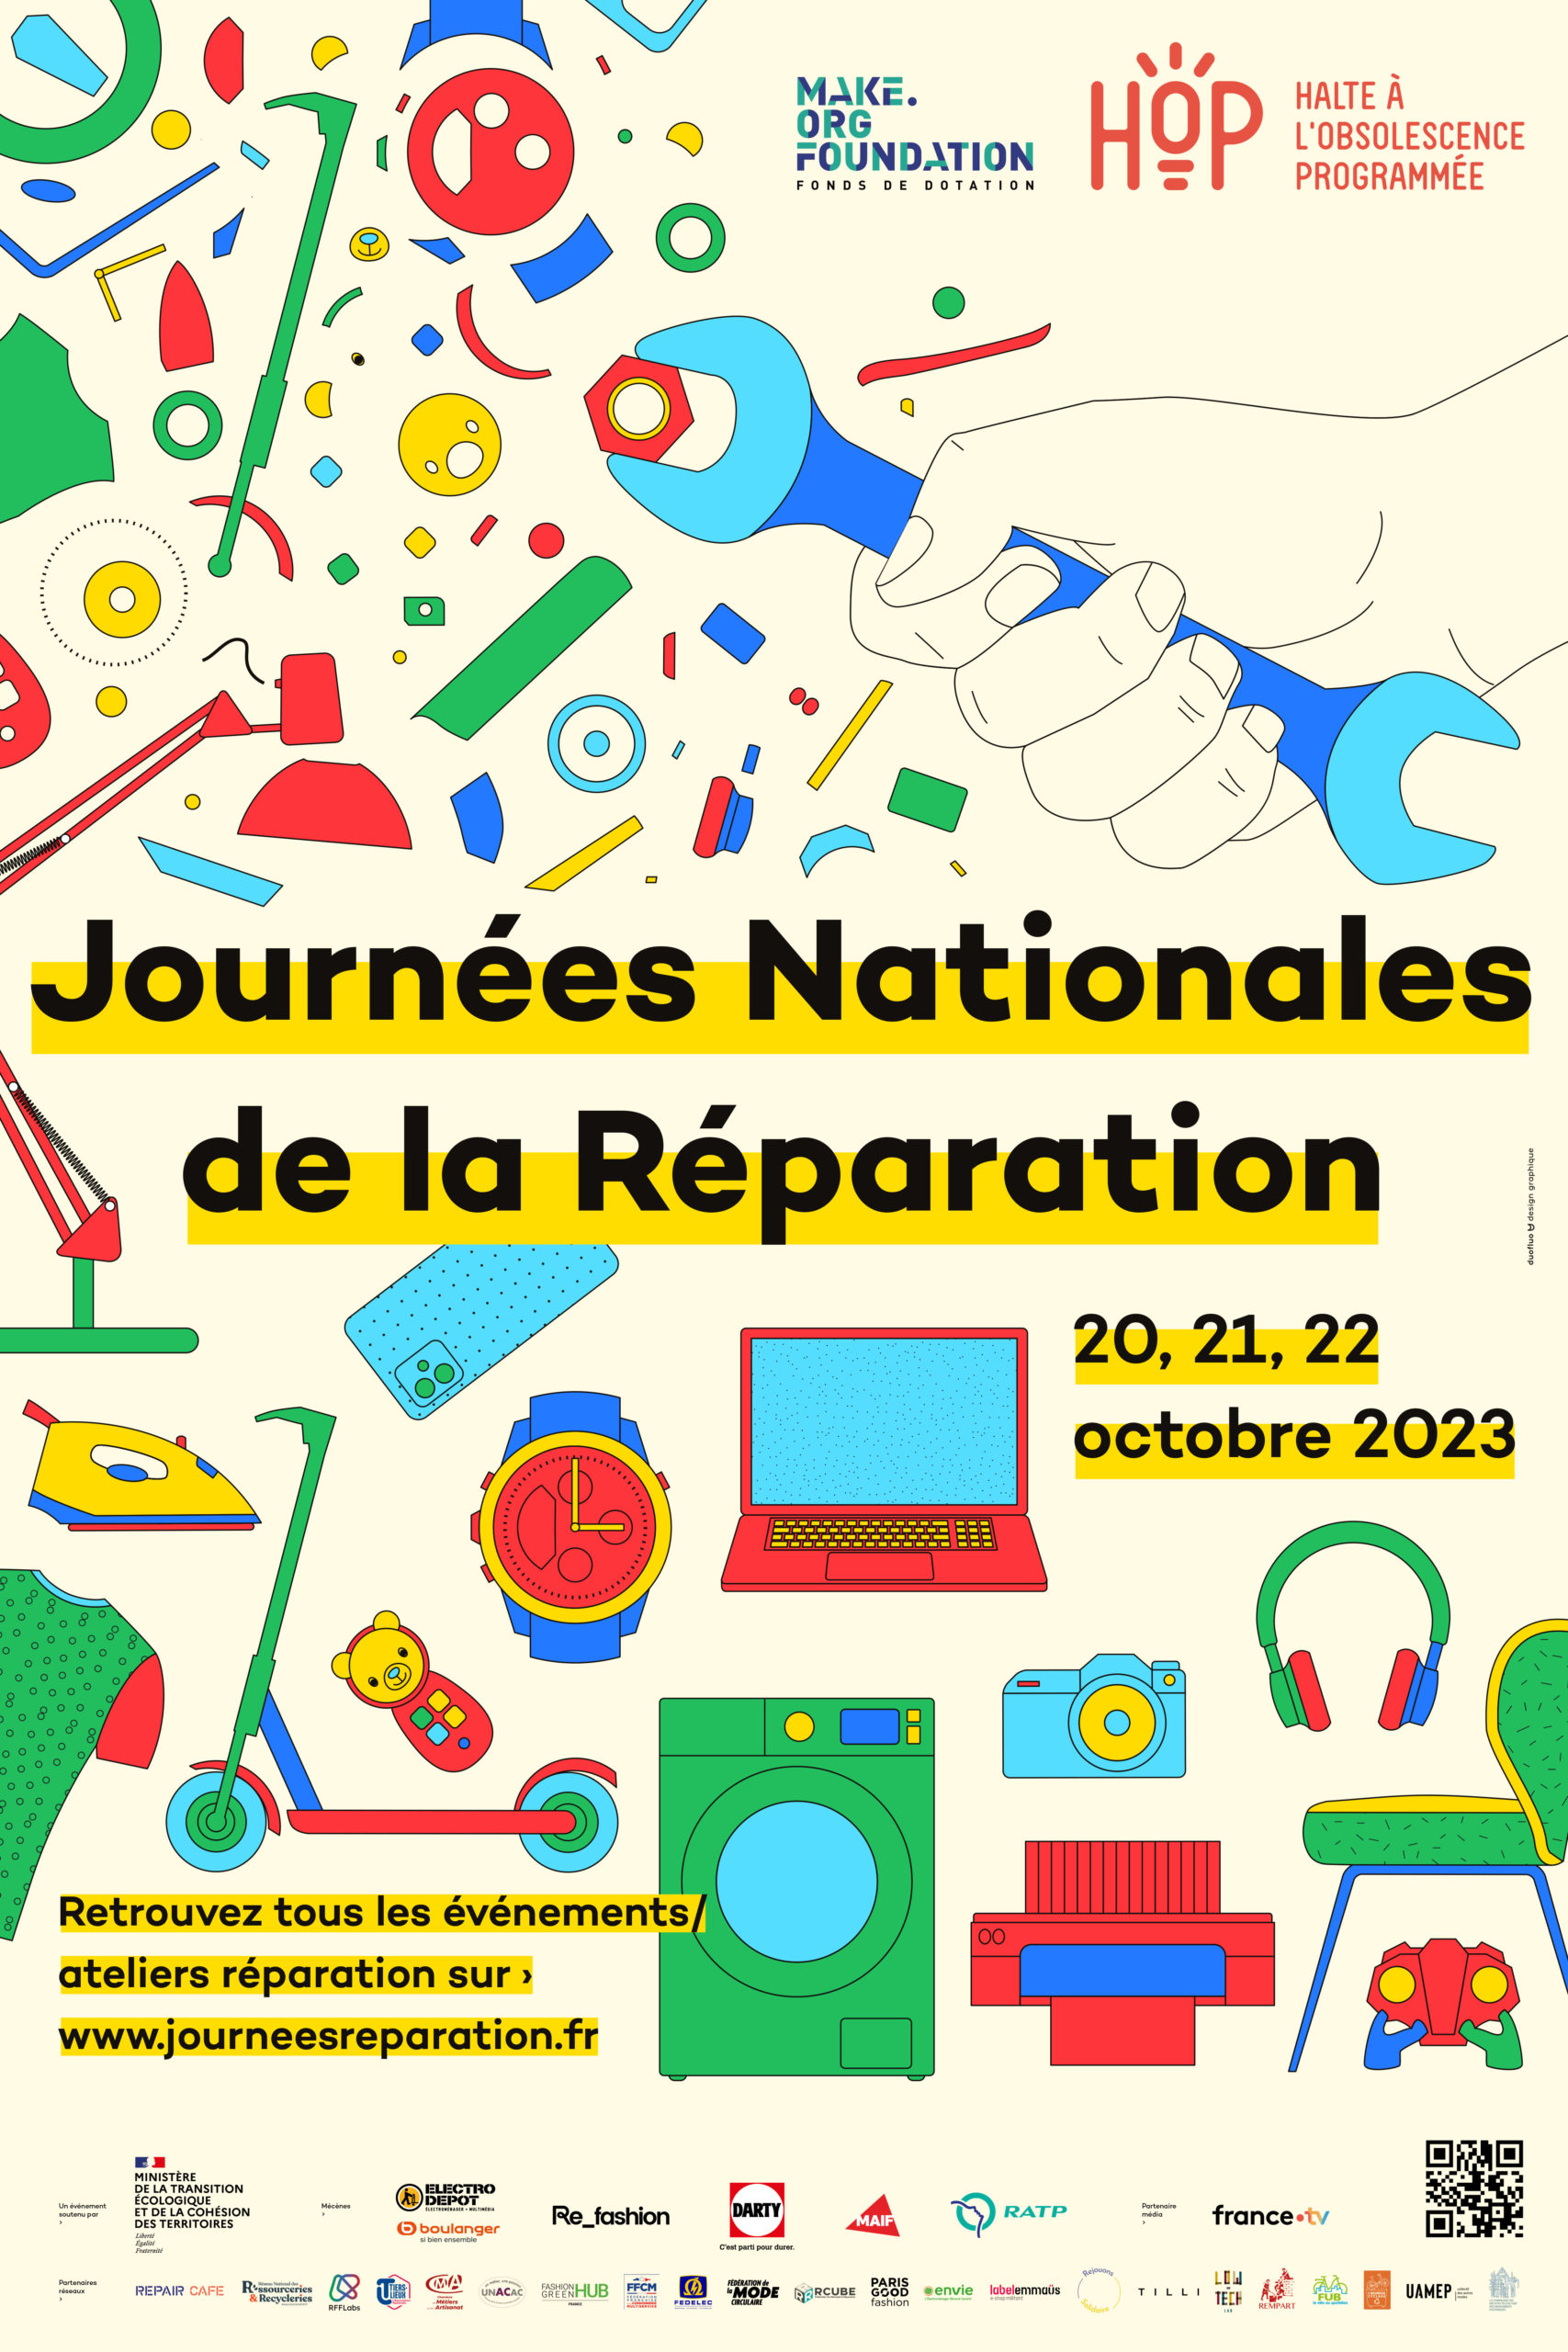 La première édition des Journées Nationales de la Réparation aura lieu les vendredi 20, samedi 21 et dimanche 22 octobre 2023.